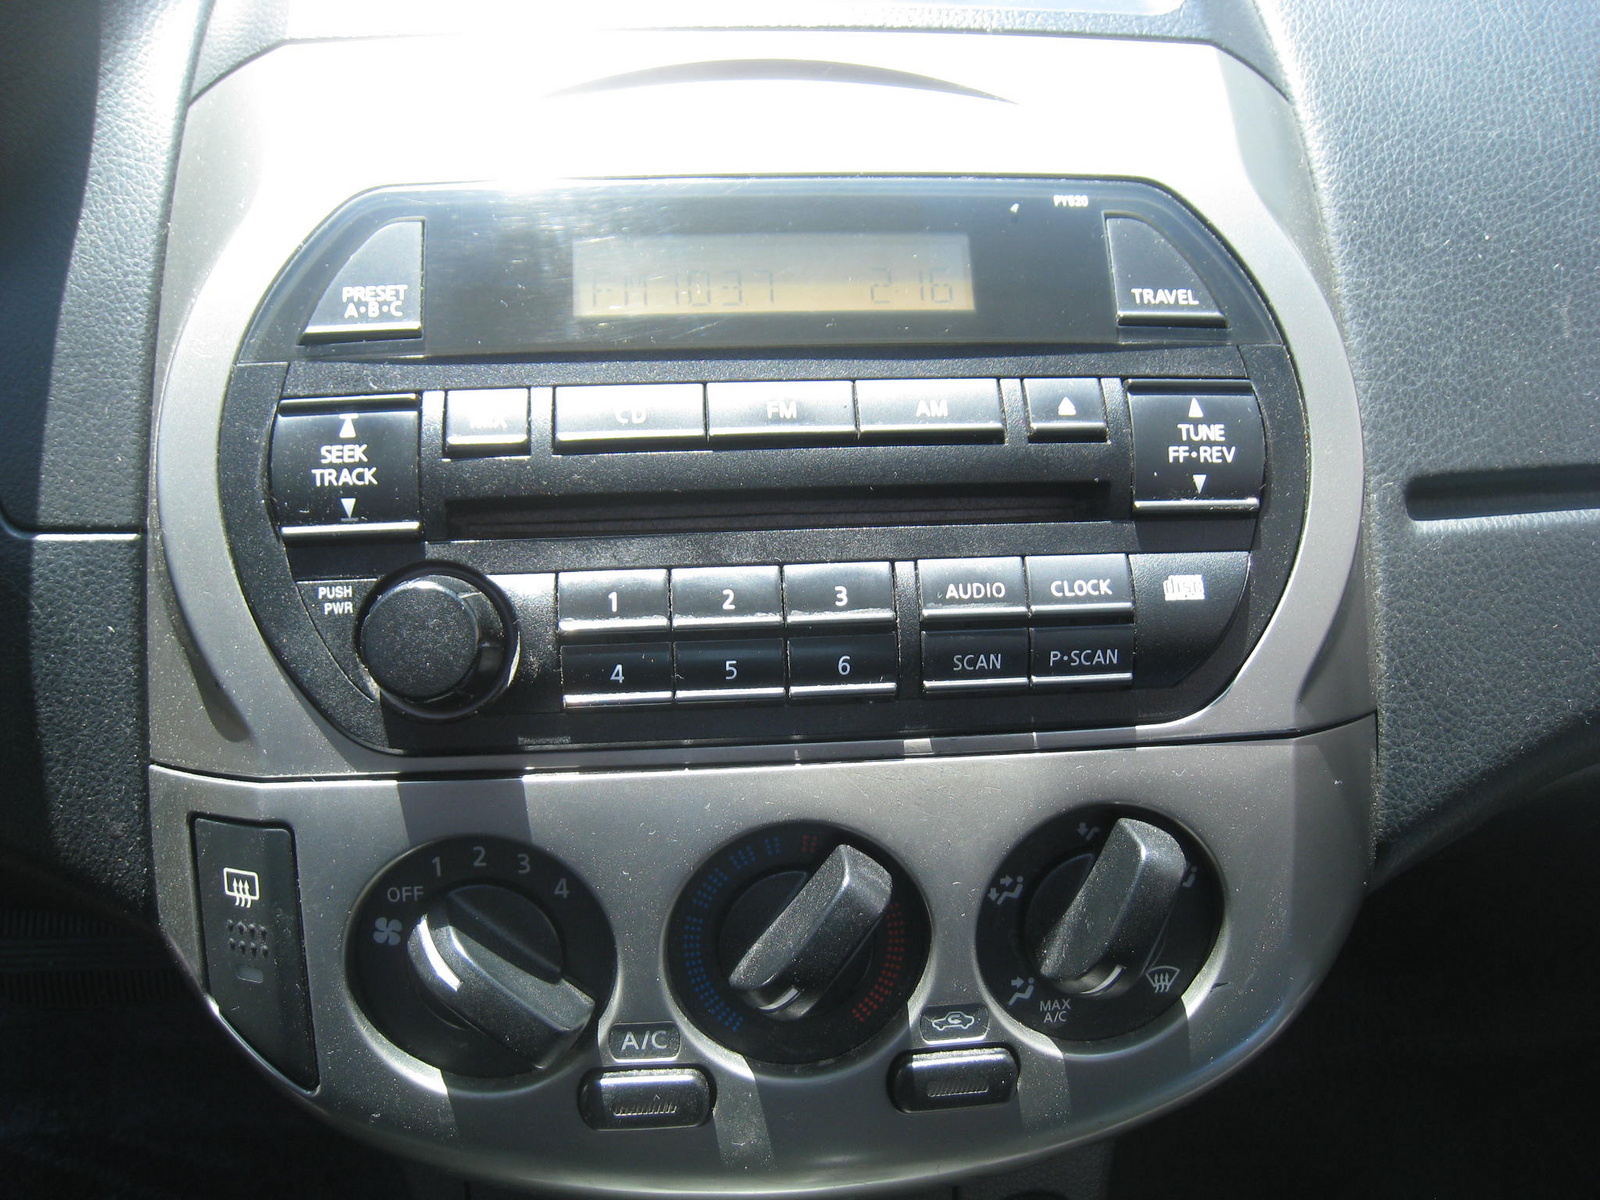 2004 Nissan altima interior dimensions #10